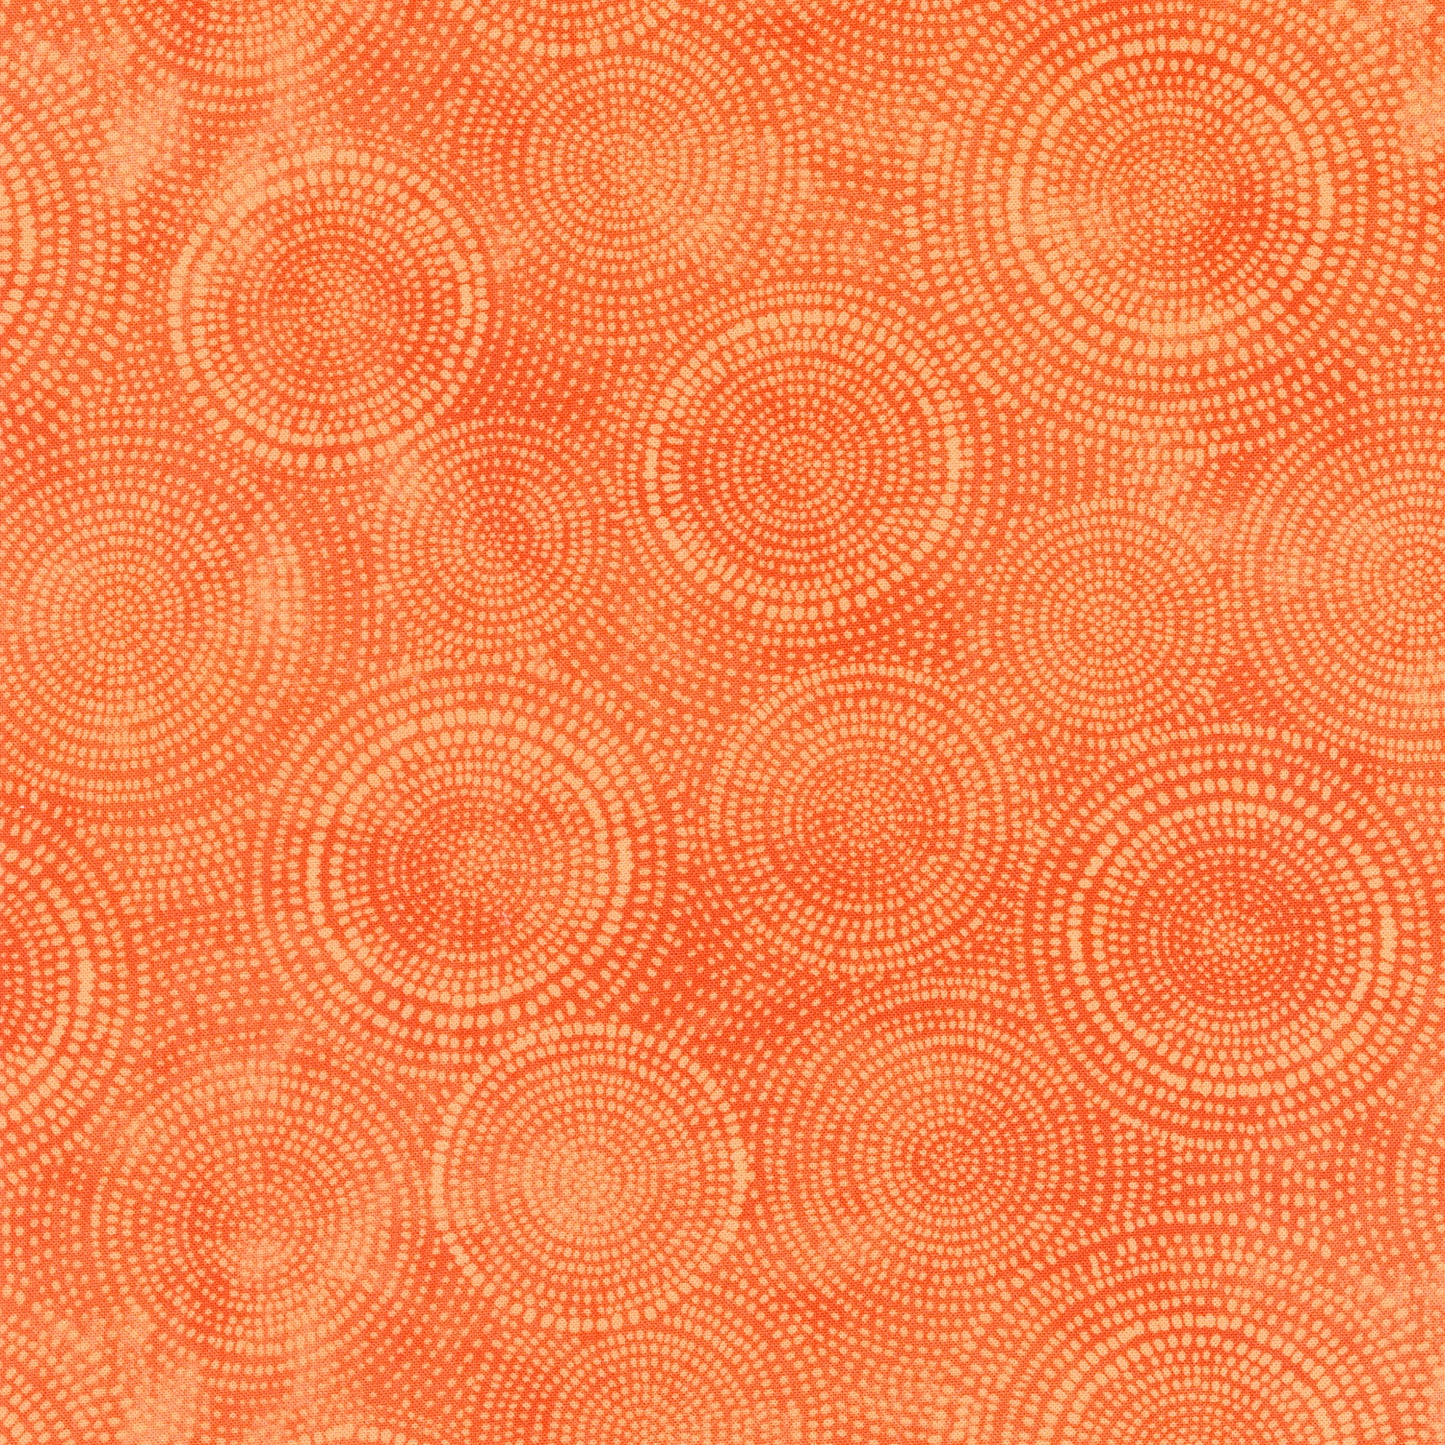 Radiance - Circle Dots Orange Yardage Primary Image